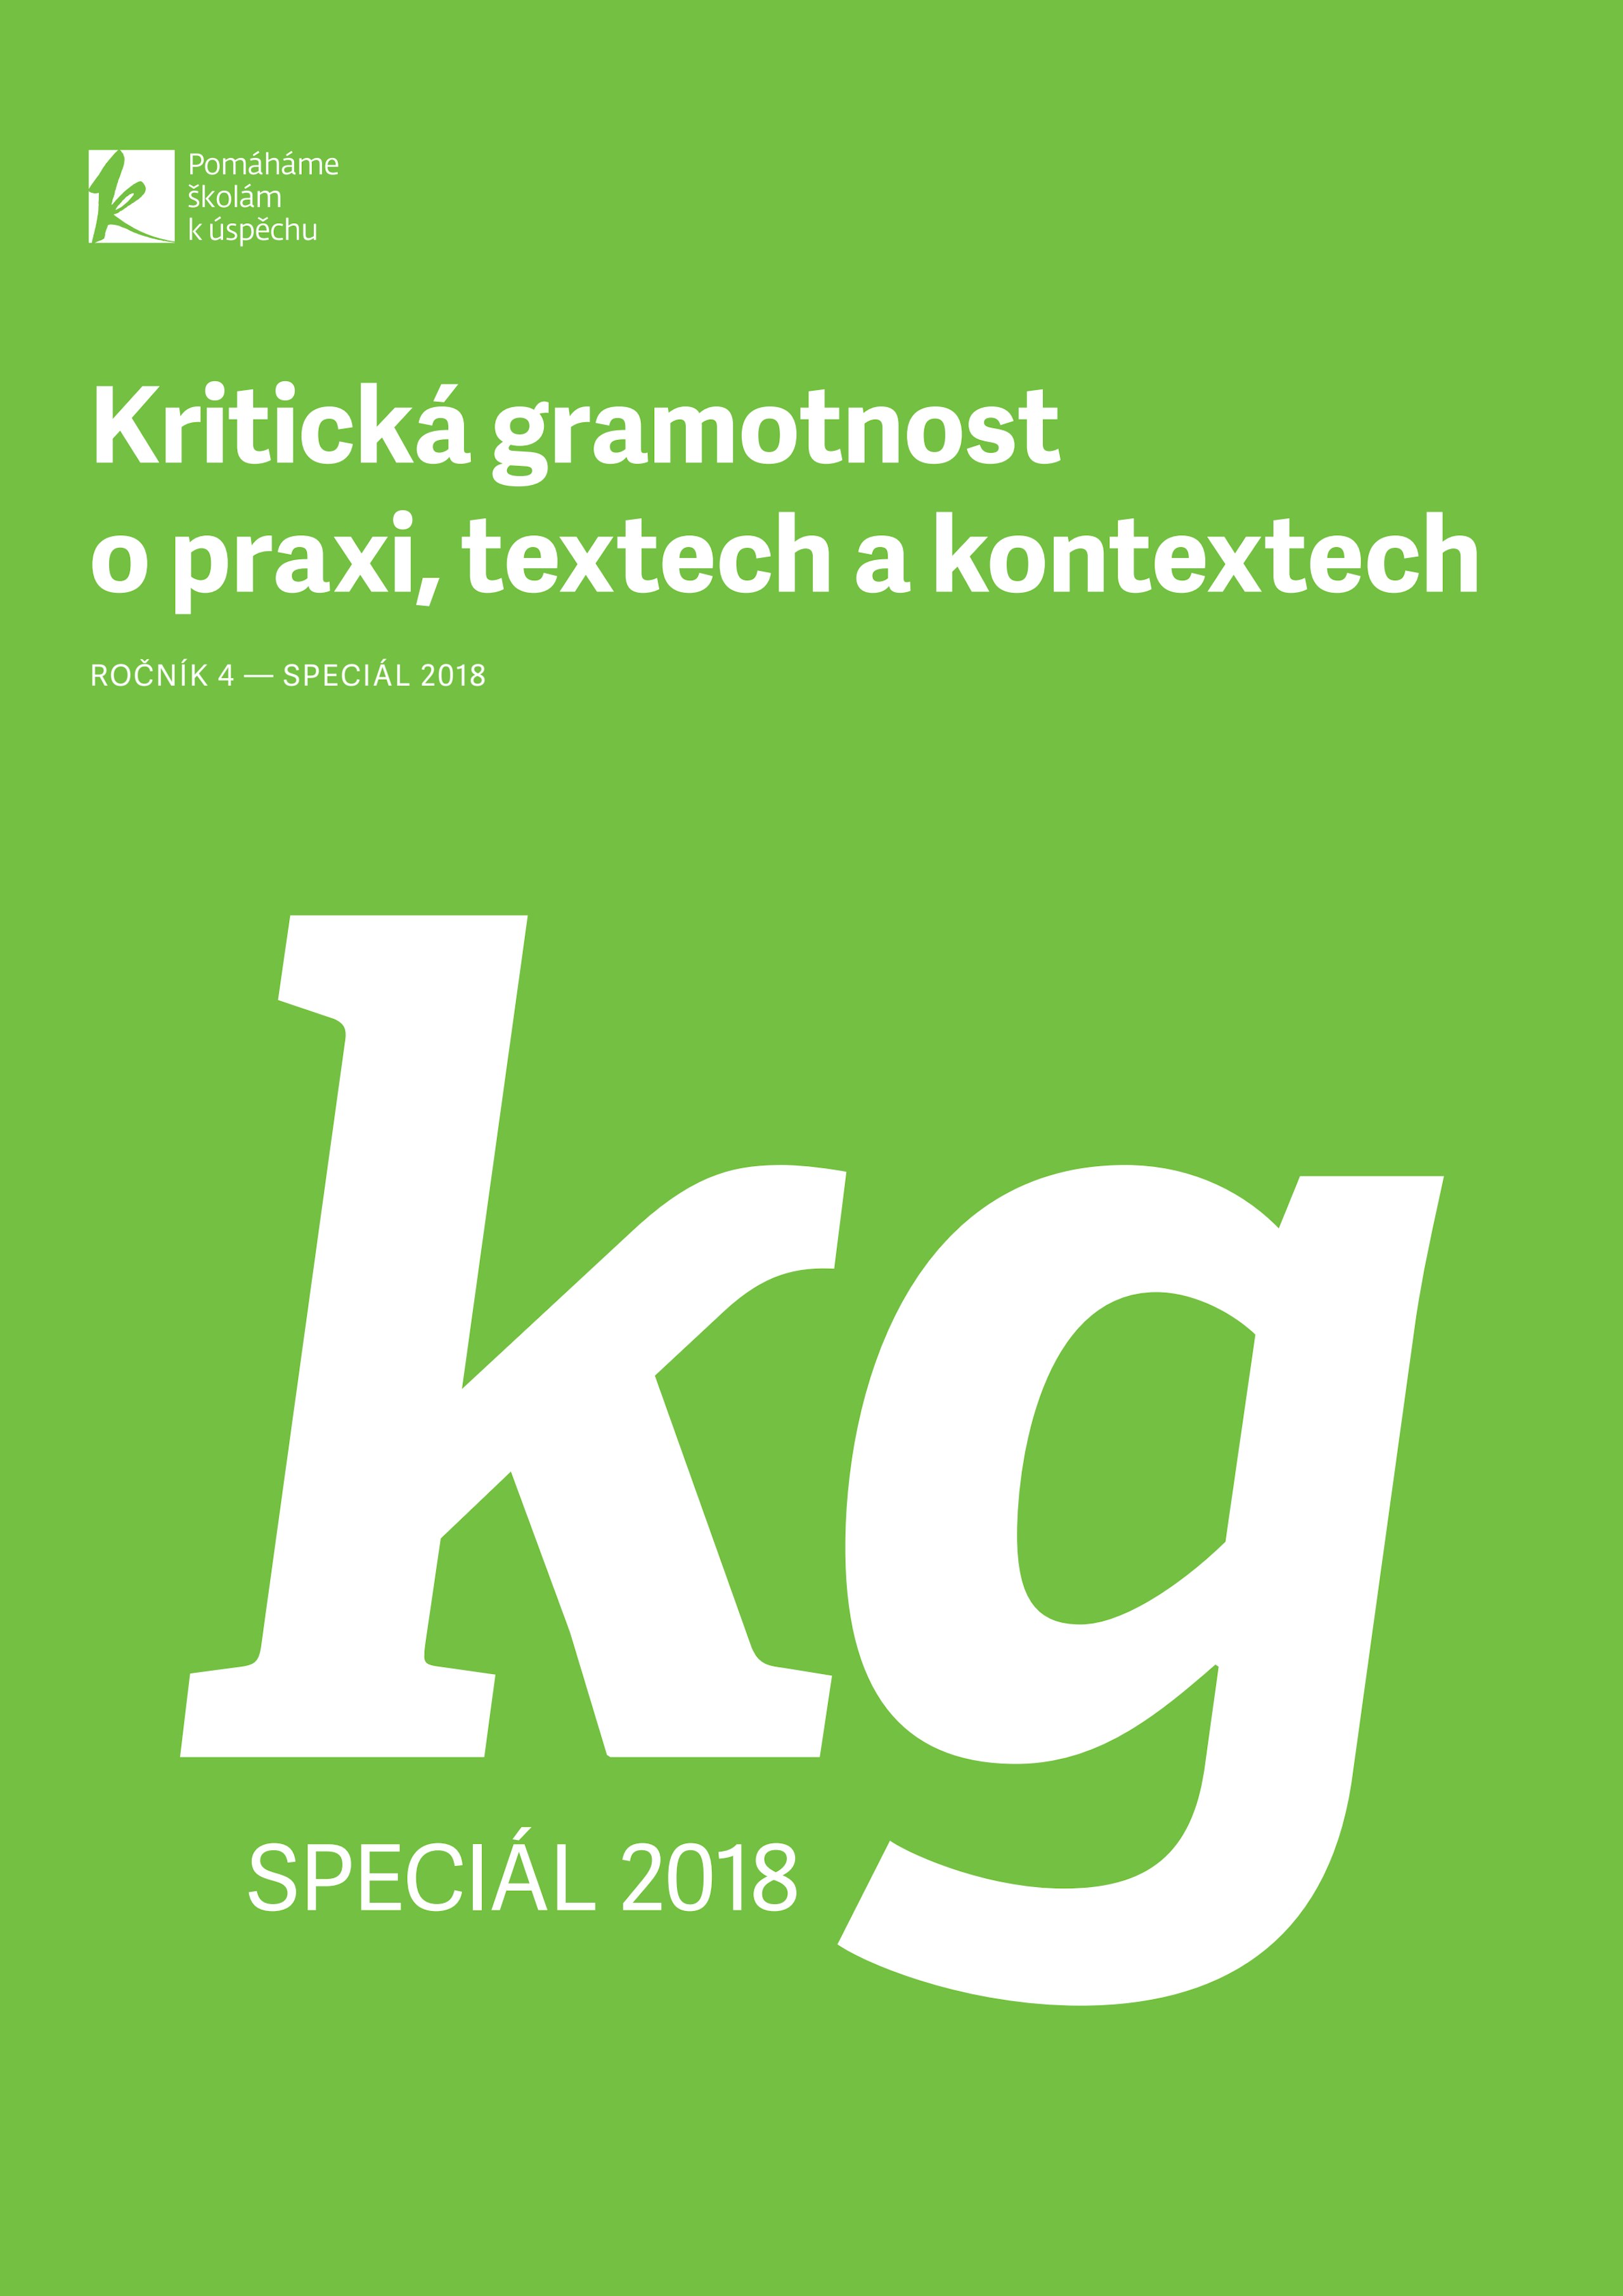 kriticka-gramotnost-special-listopad-2018.pdf